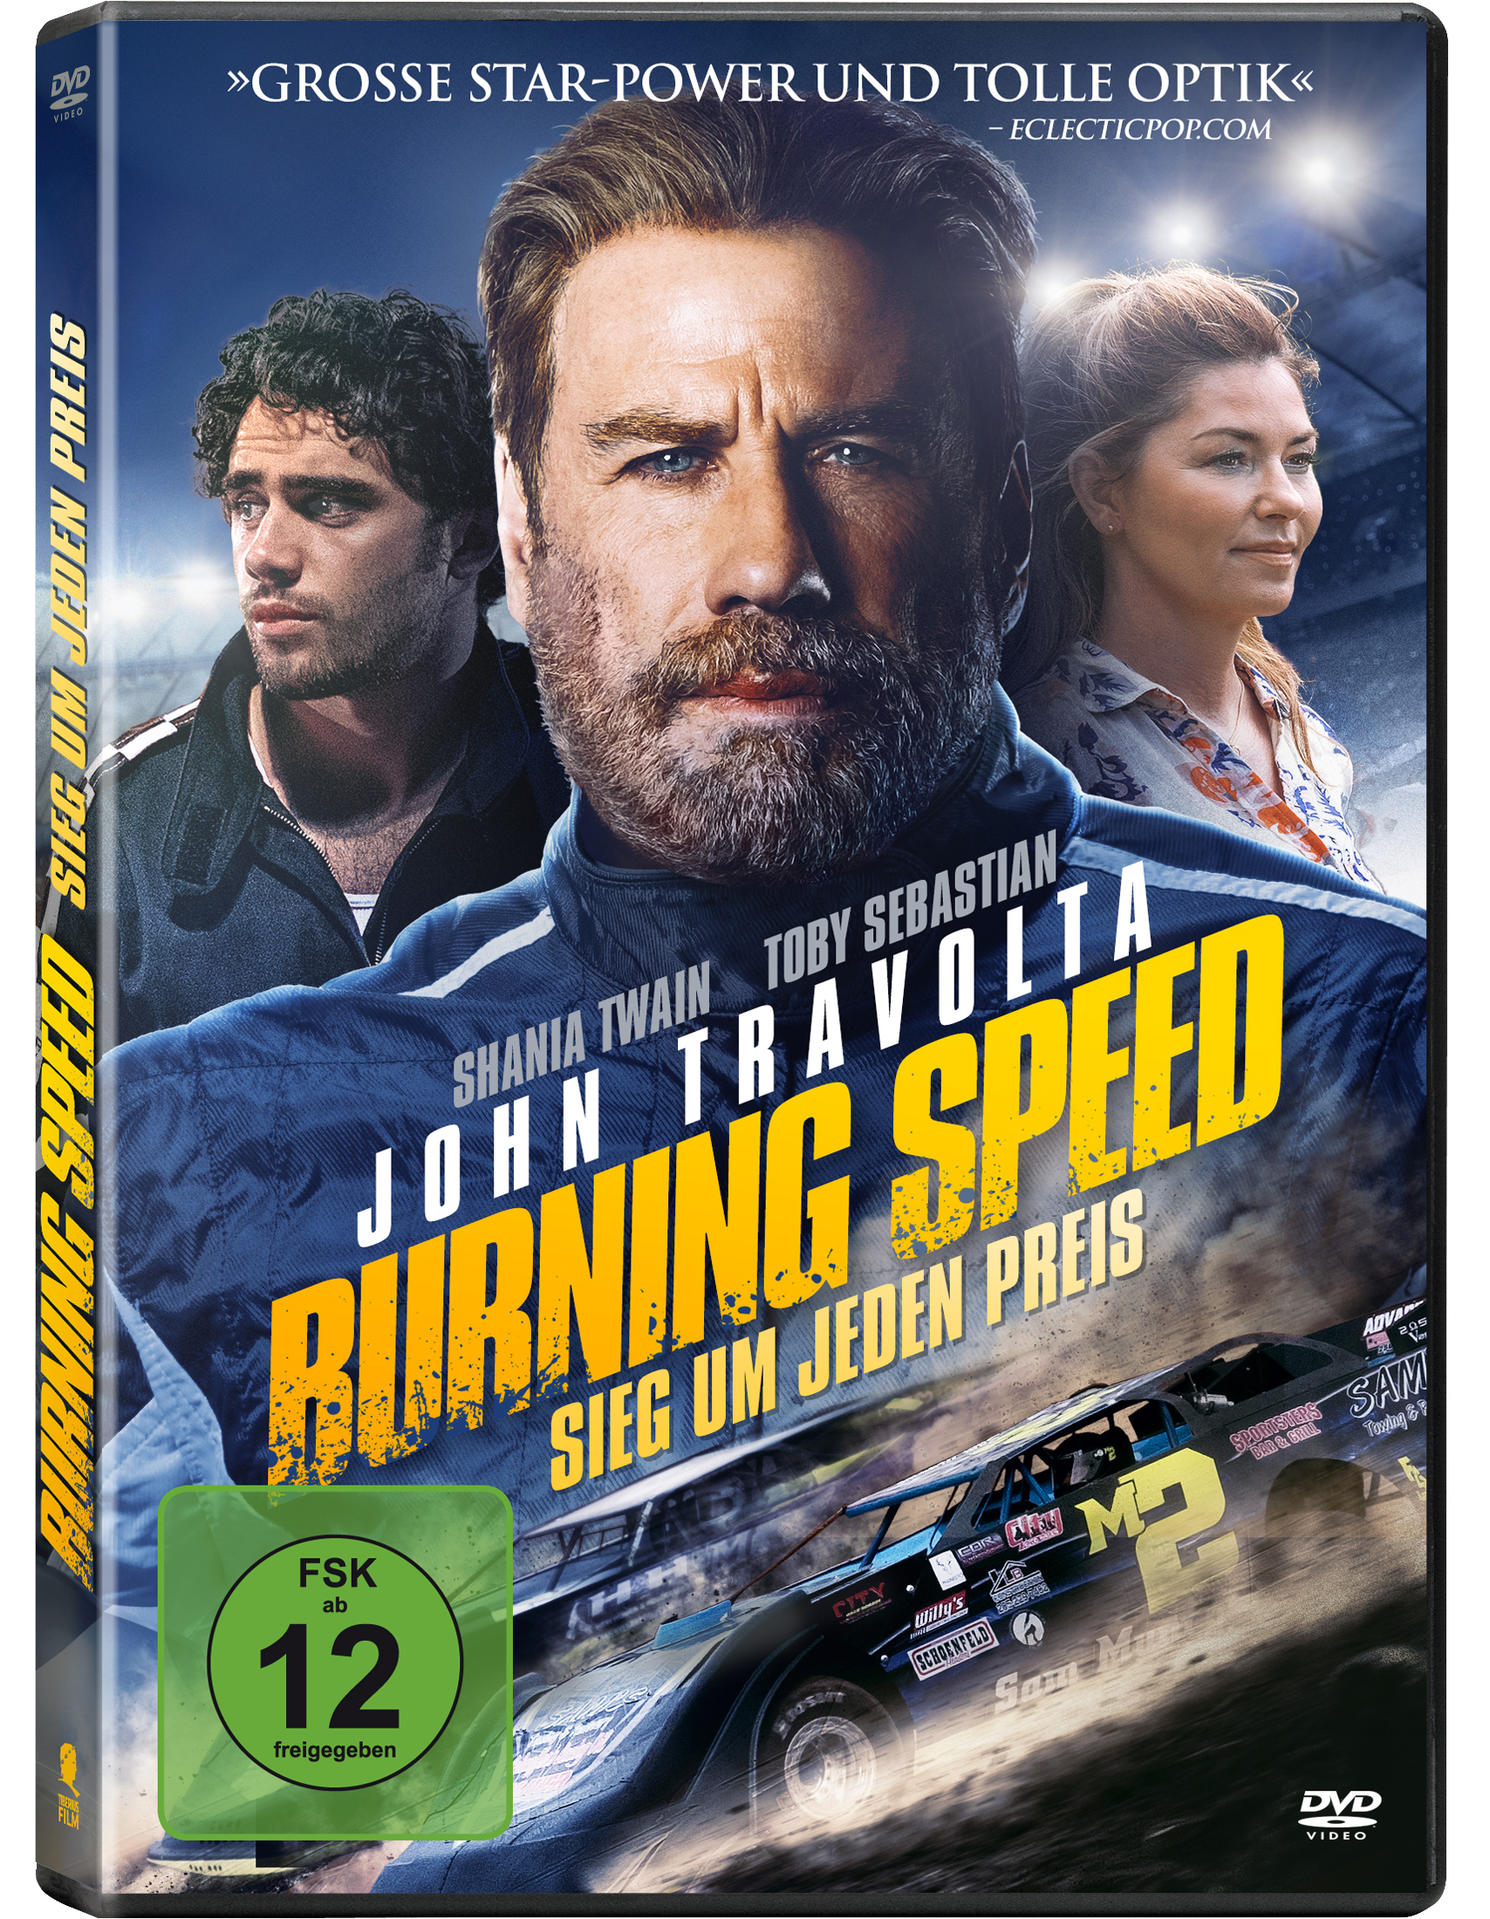 Burning Speed - Sieg DVD jeden Preis um